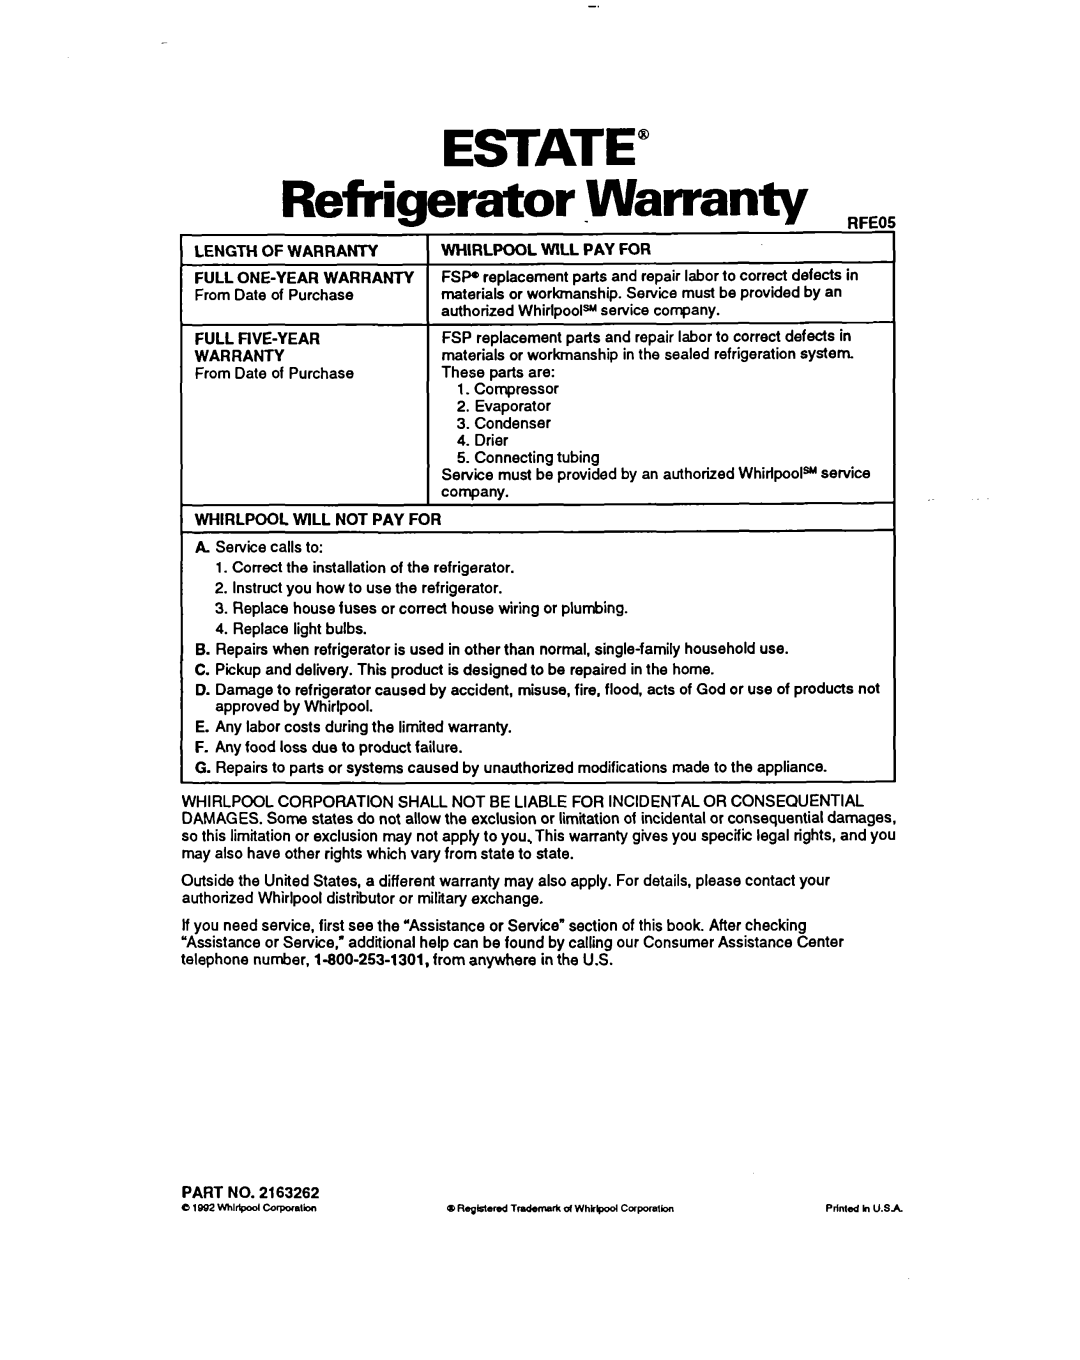 Whirlpool lT20AK ESTATE” Refrigerator -WarrantyRFEC, Length Of Warranty Full One-Yearwarranty, Full Five-Year Warranty 